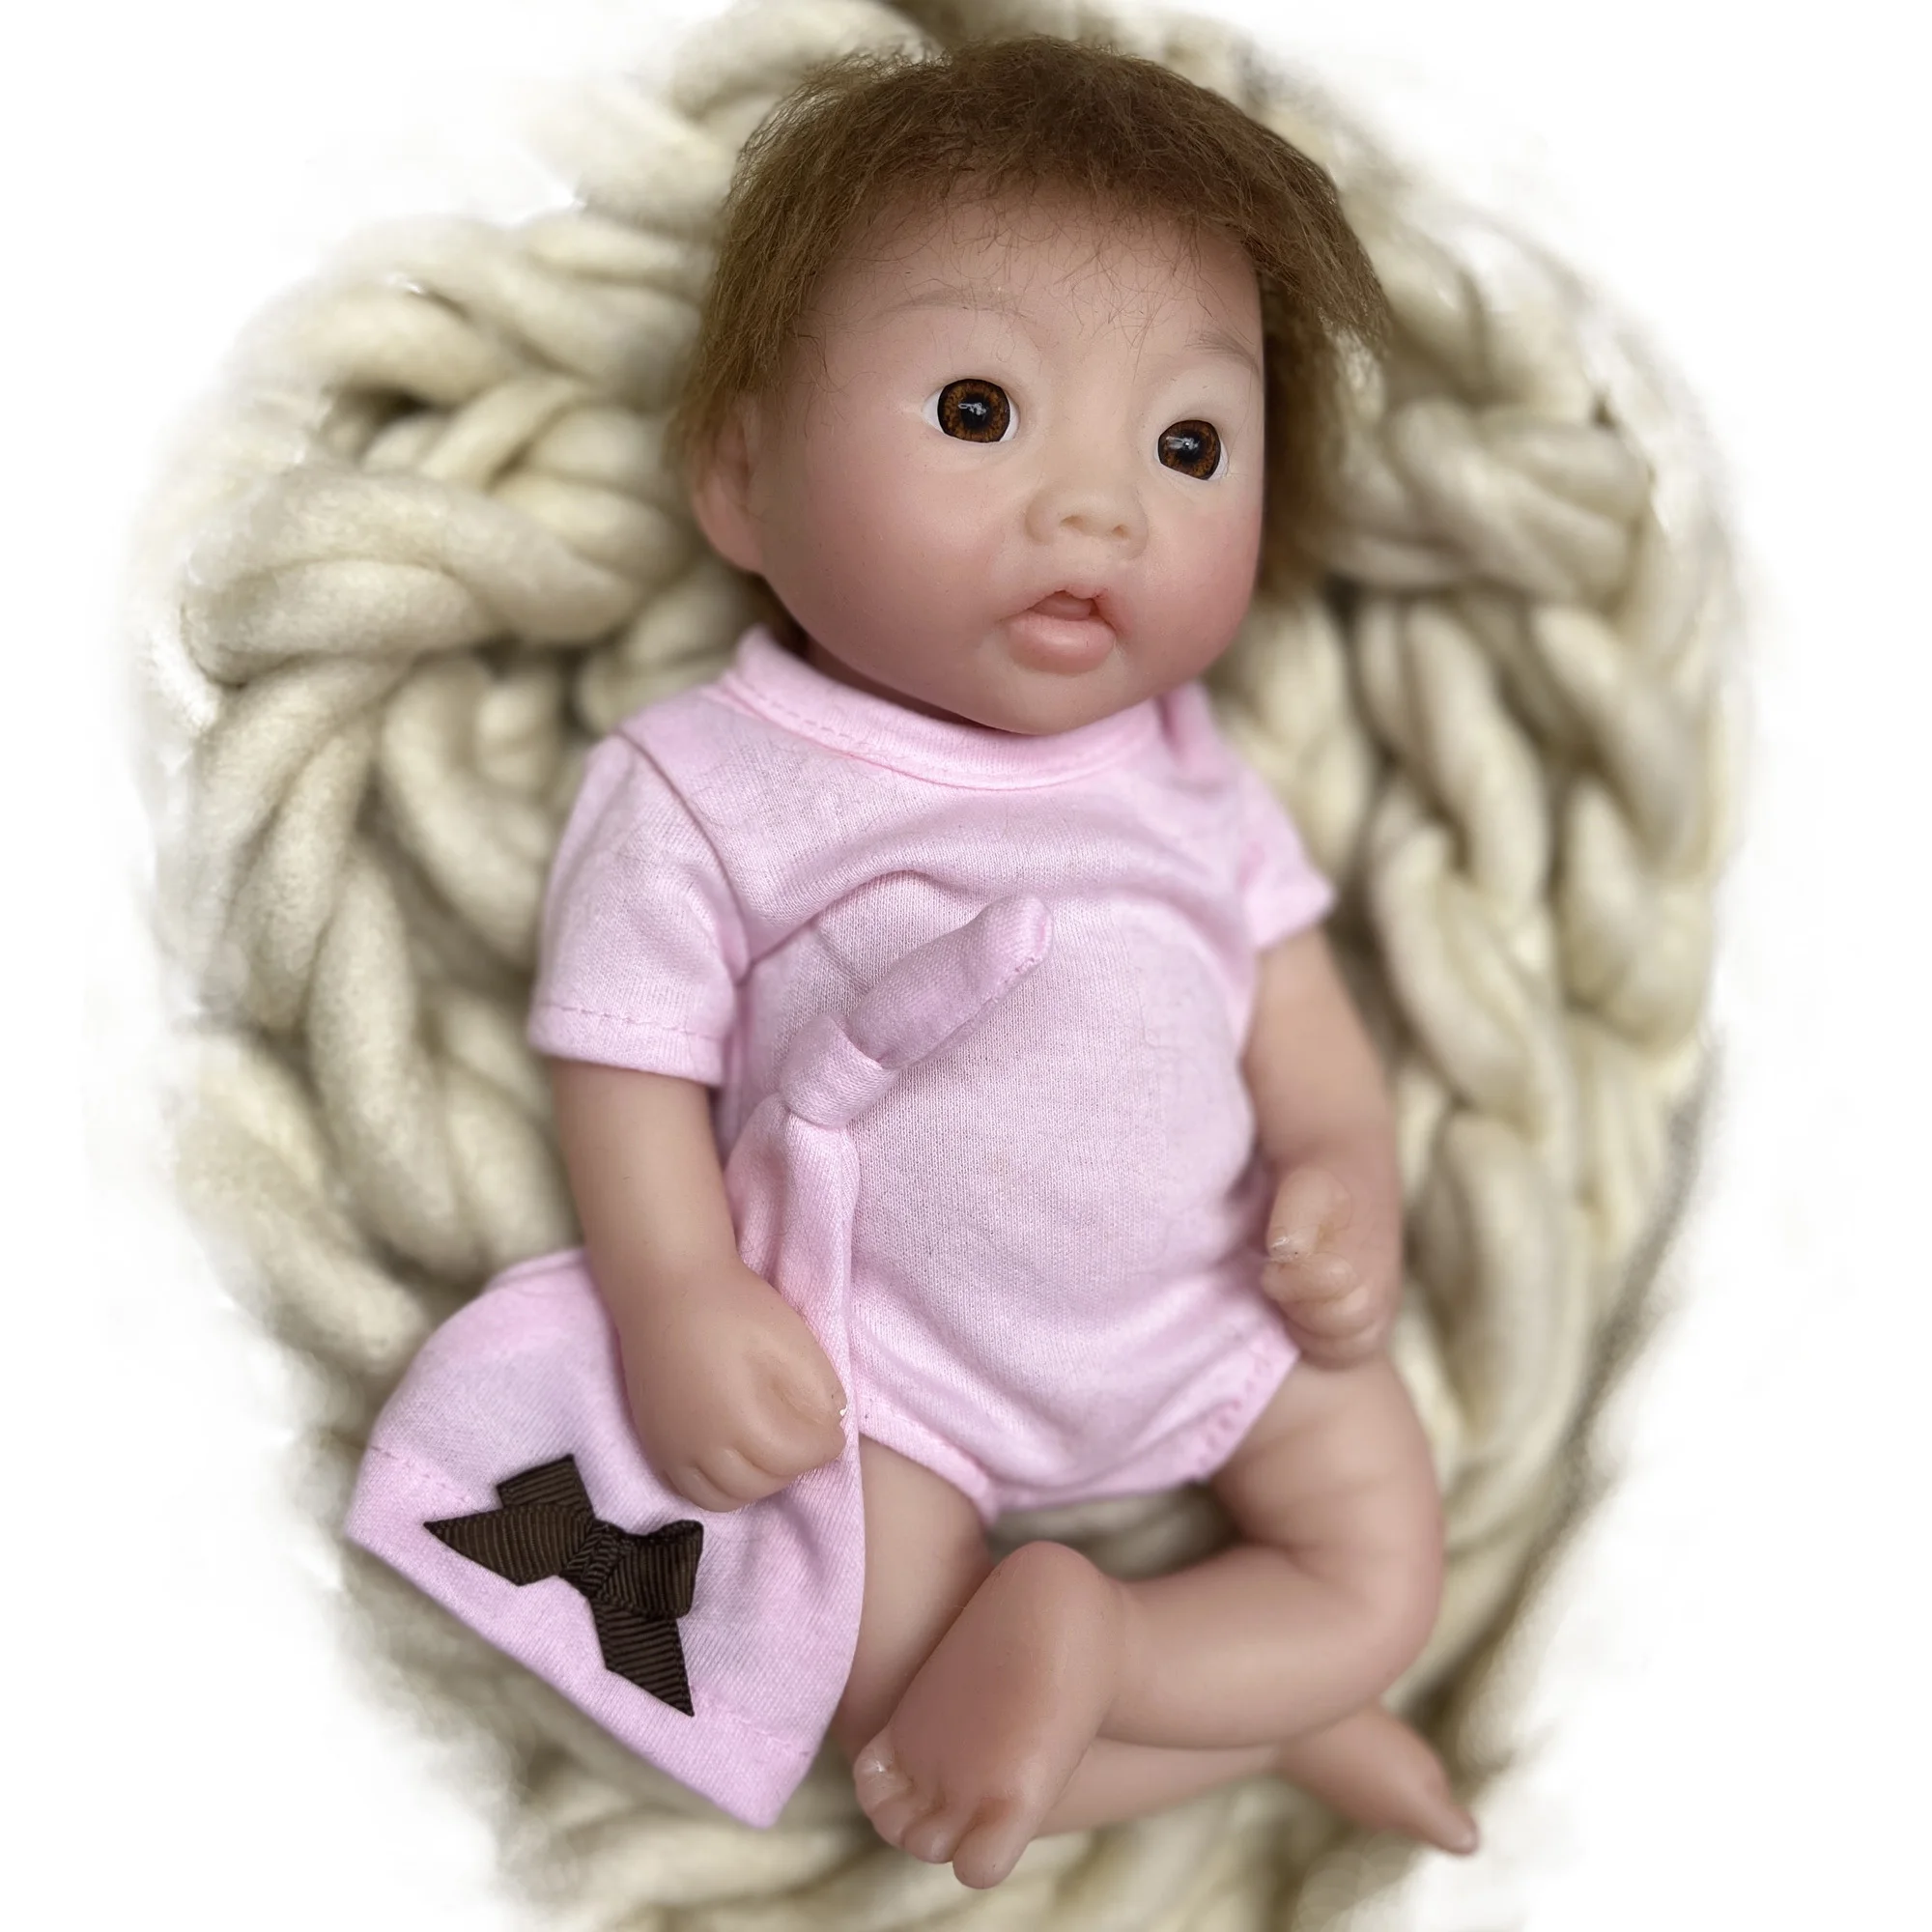 35 CM Bebe Silicone Boy Reborn Doll Can drink milk, pee, bath muñecas  Finished reborn de silicona real reborn silicone sólido